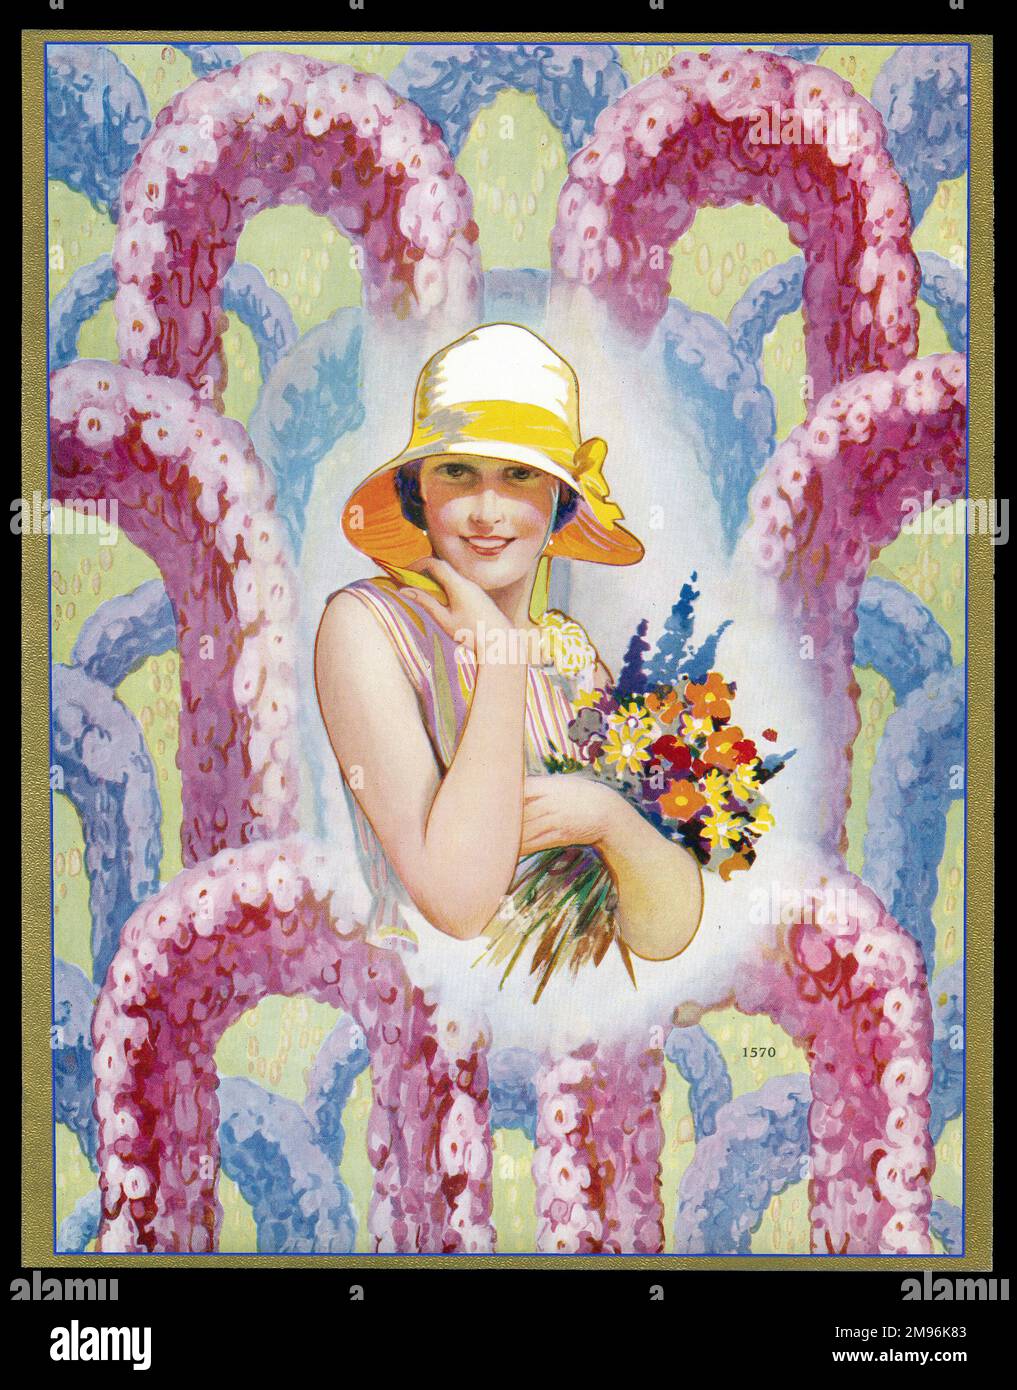 Schokoladenkastendesign mit einer Dame mit Hut und einem Blumenstrauß, mit pinkfarbenen und blauen Blumenbögen im Hintergrund. Stockfoto